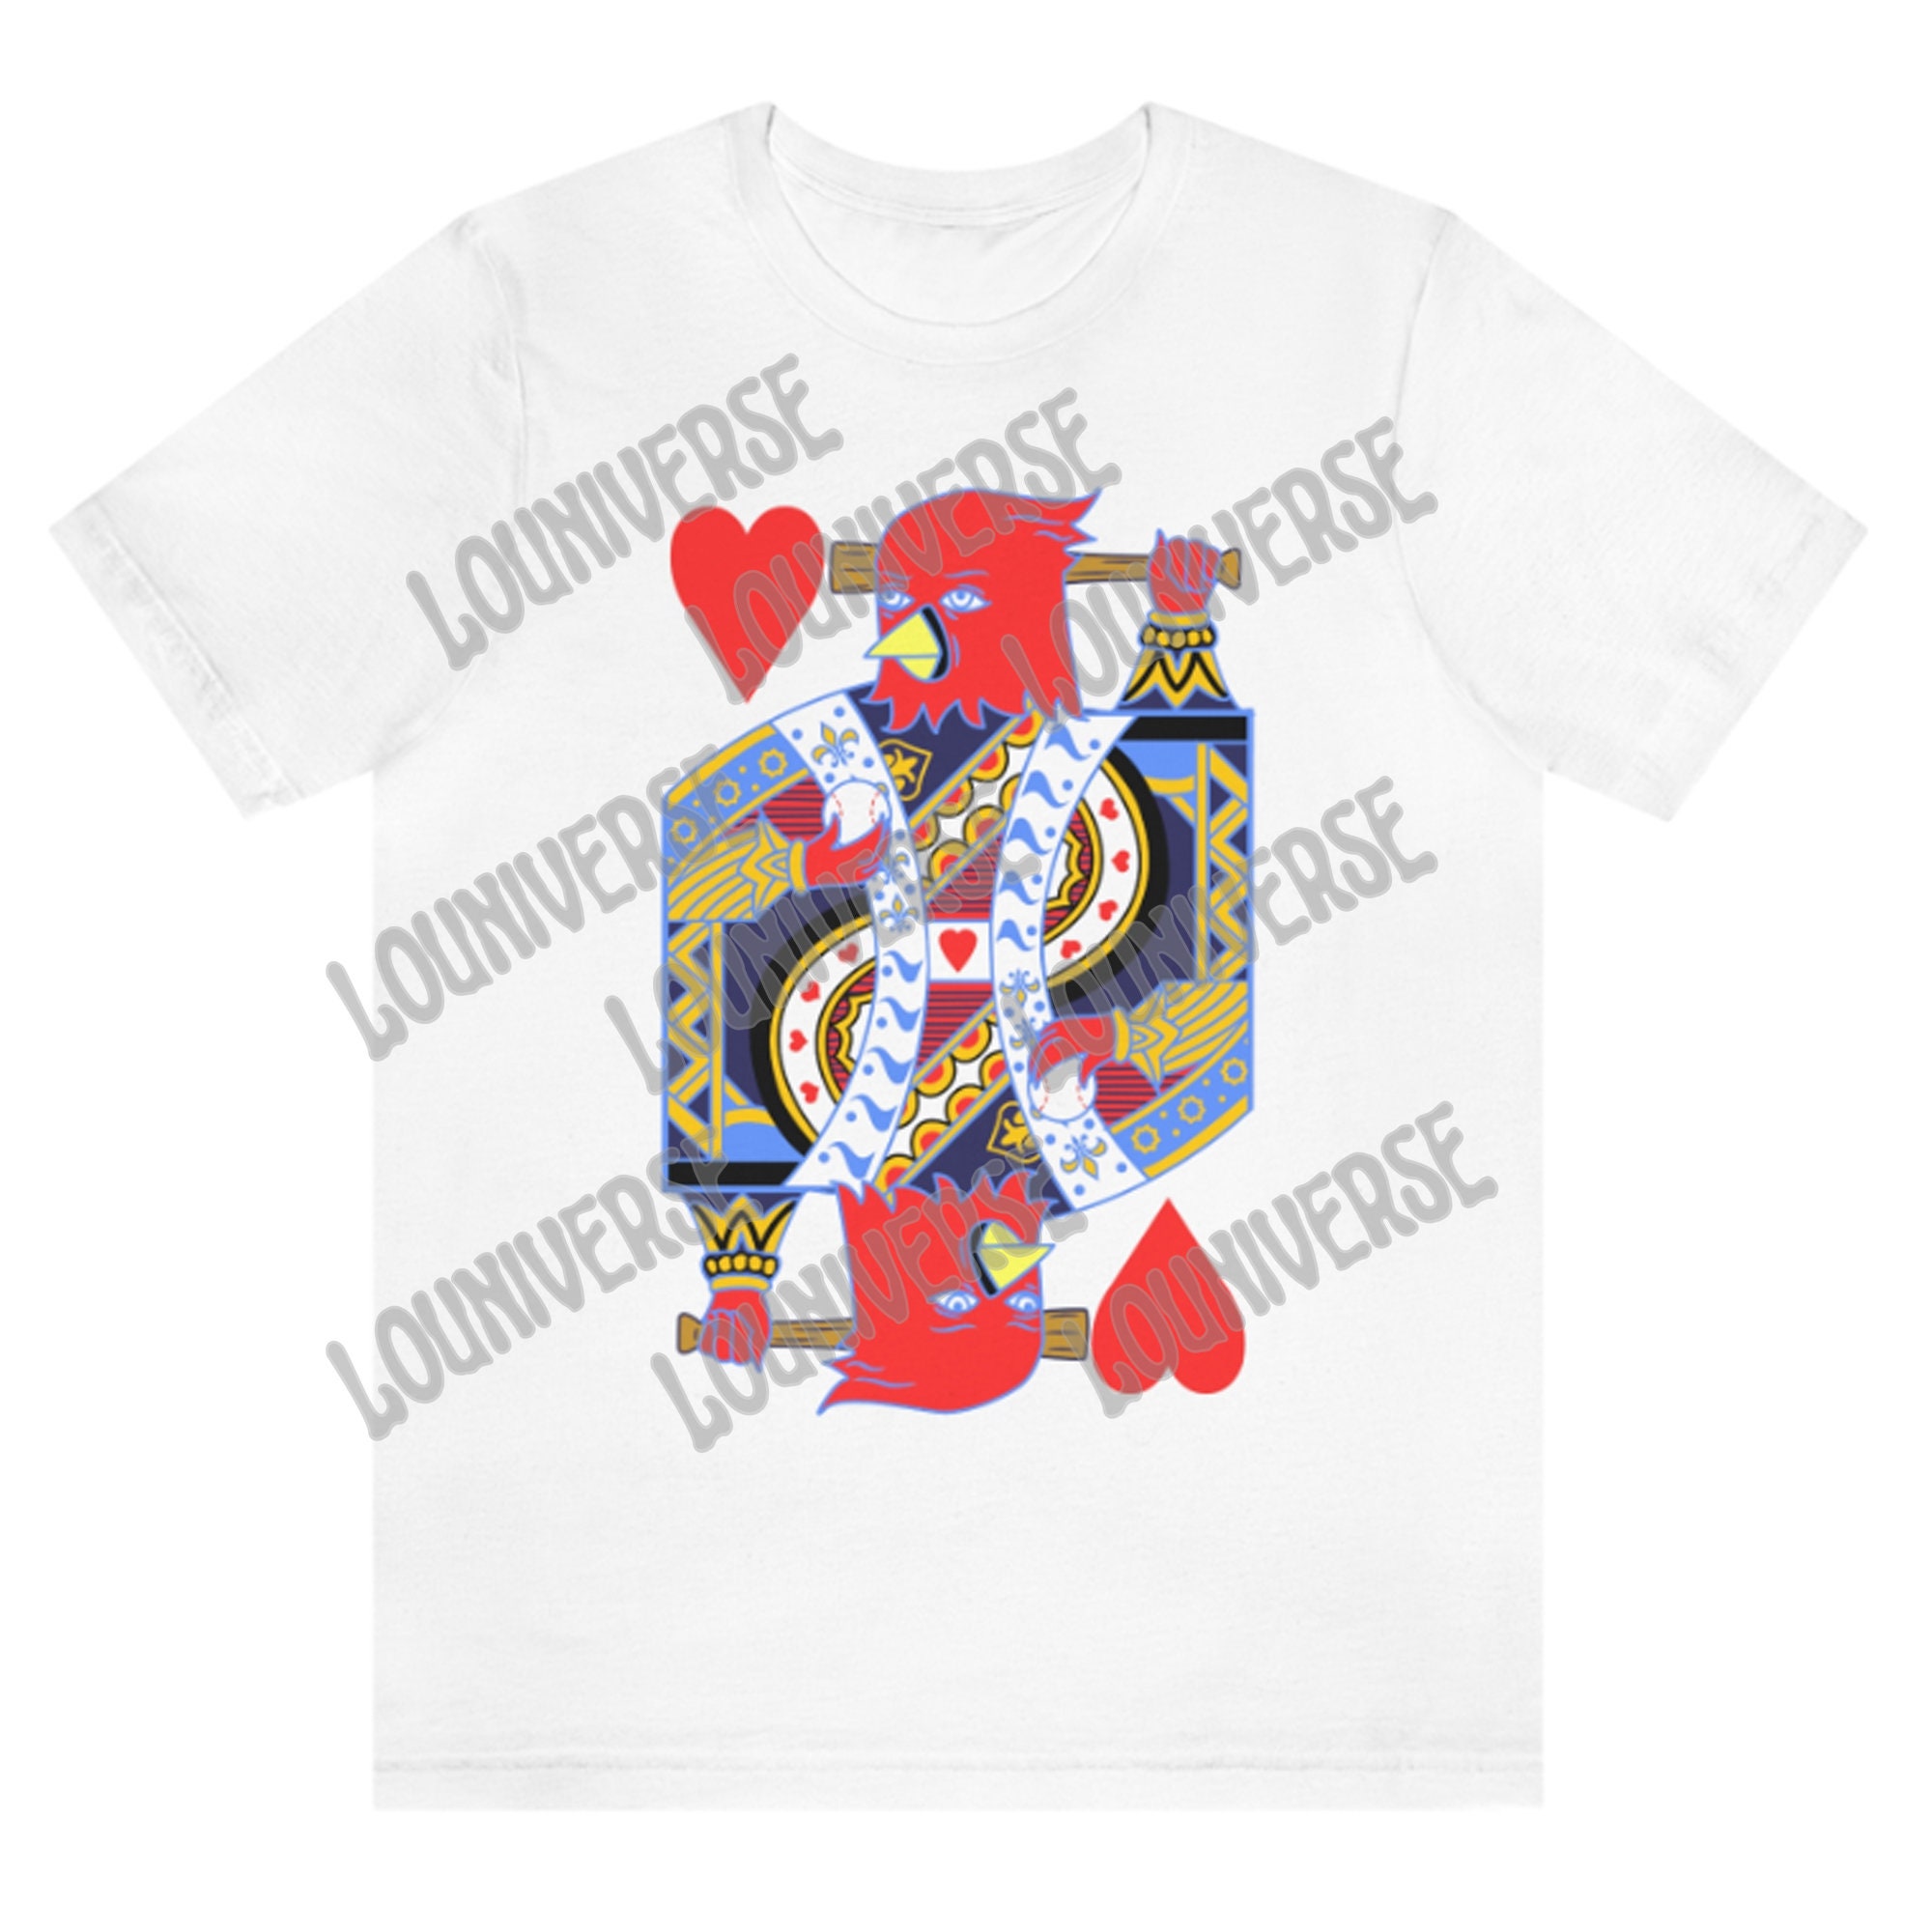 ShopTheLOUniverse St. Louis Cardinals Shirt for Kids | Birds Go Bam! | Cardinals Baseball, St. Louis Cardinals T-Shirt, St. Louis Souvenirs, Cardinals Gifts